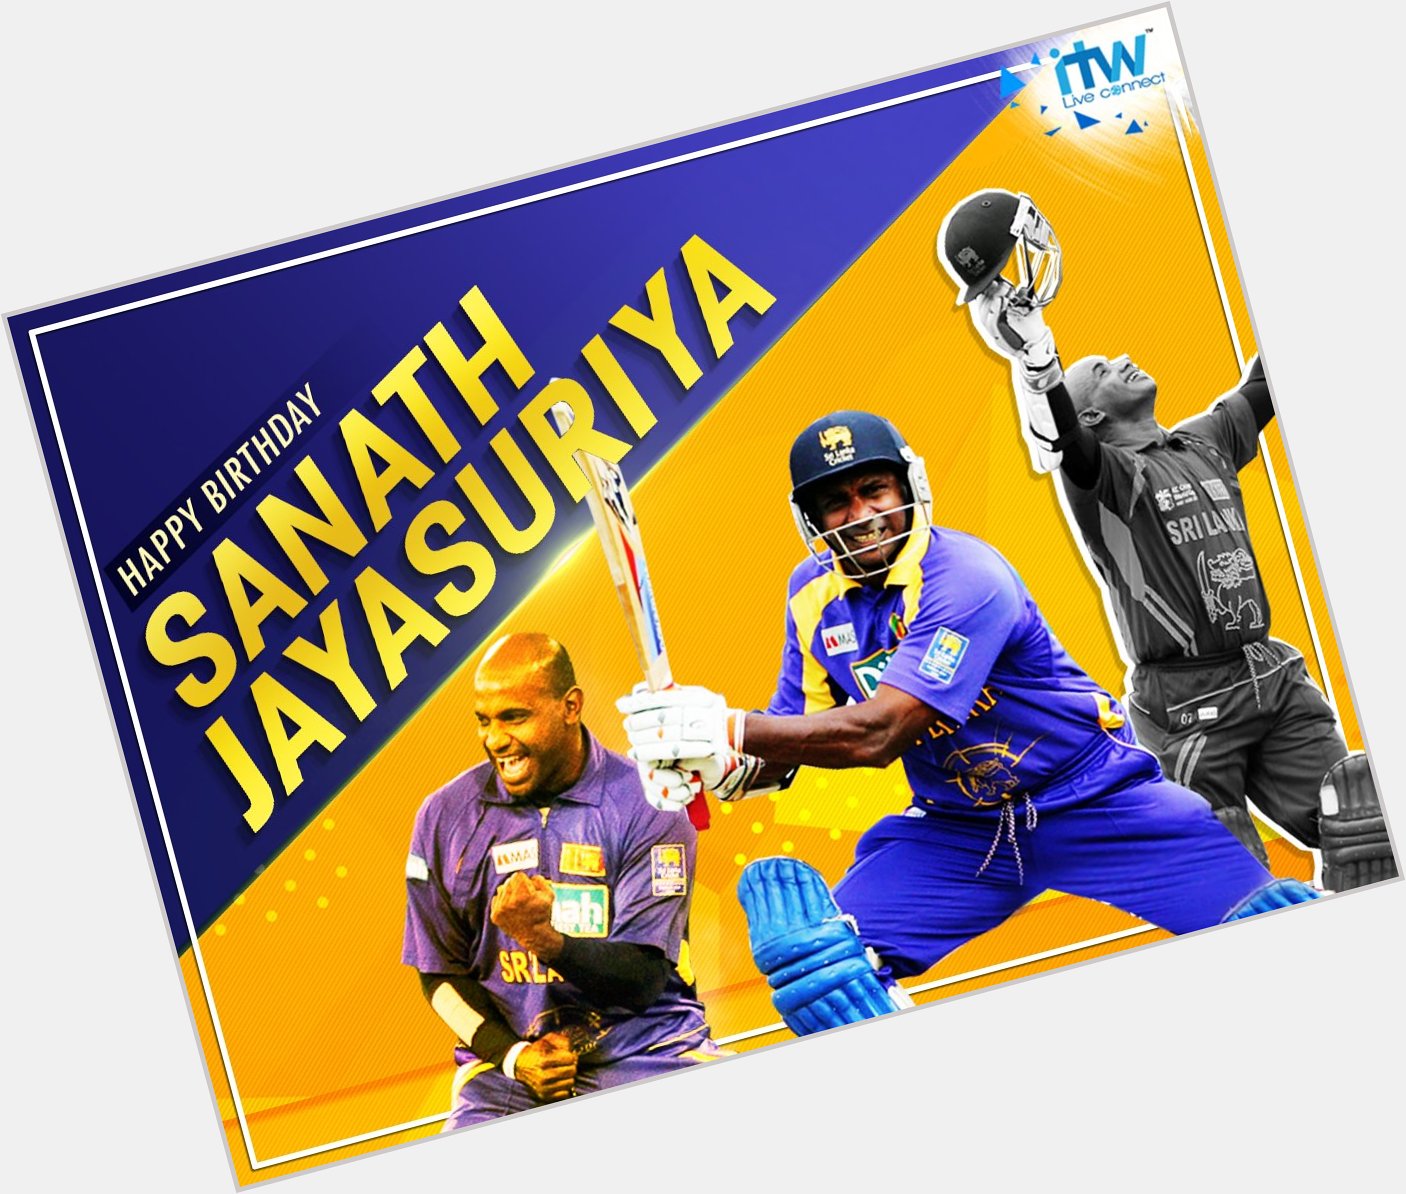 Wishing legendary opening batsman Sanath Jayasuriya a very Happy Birthday. 